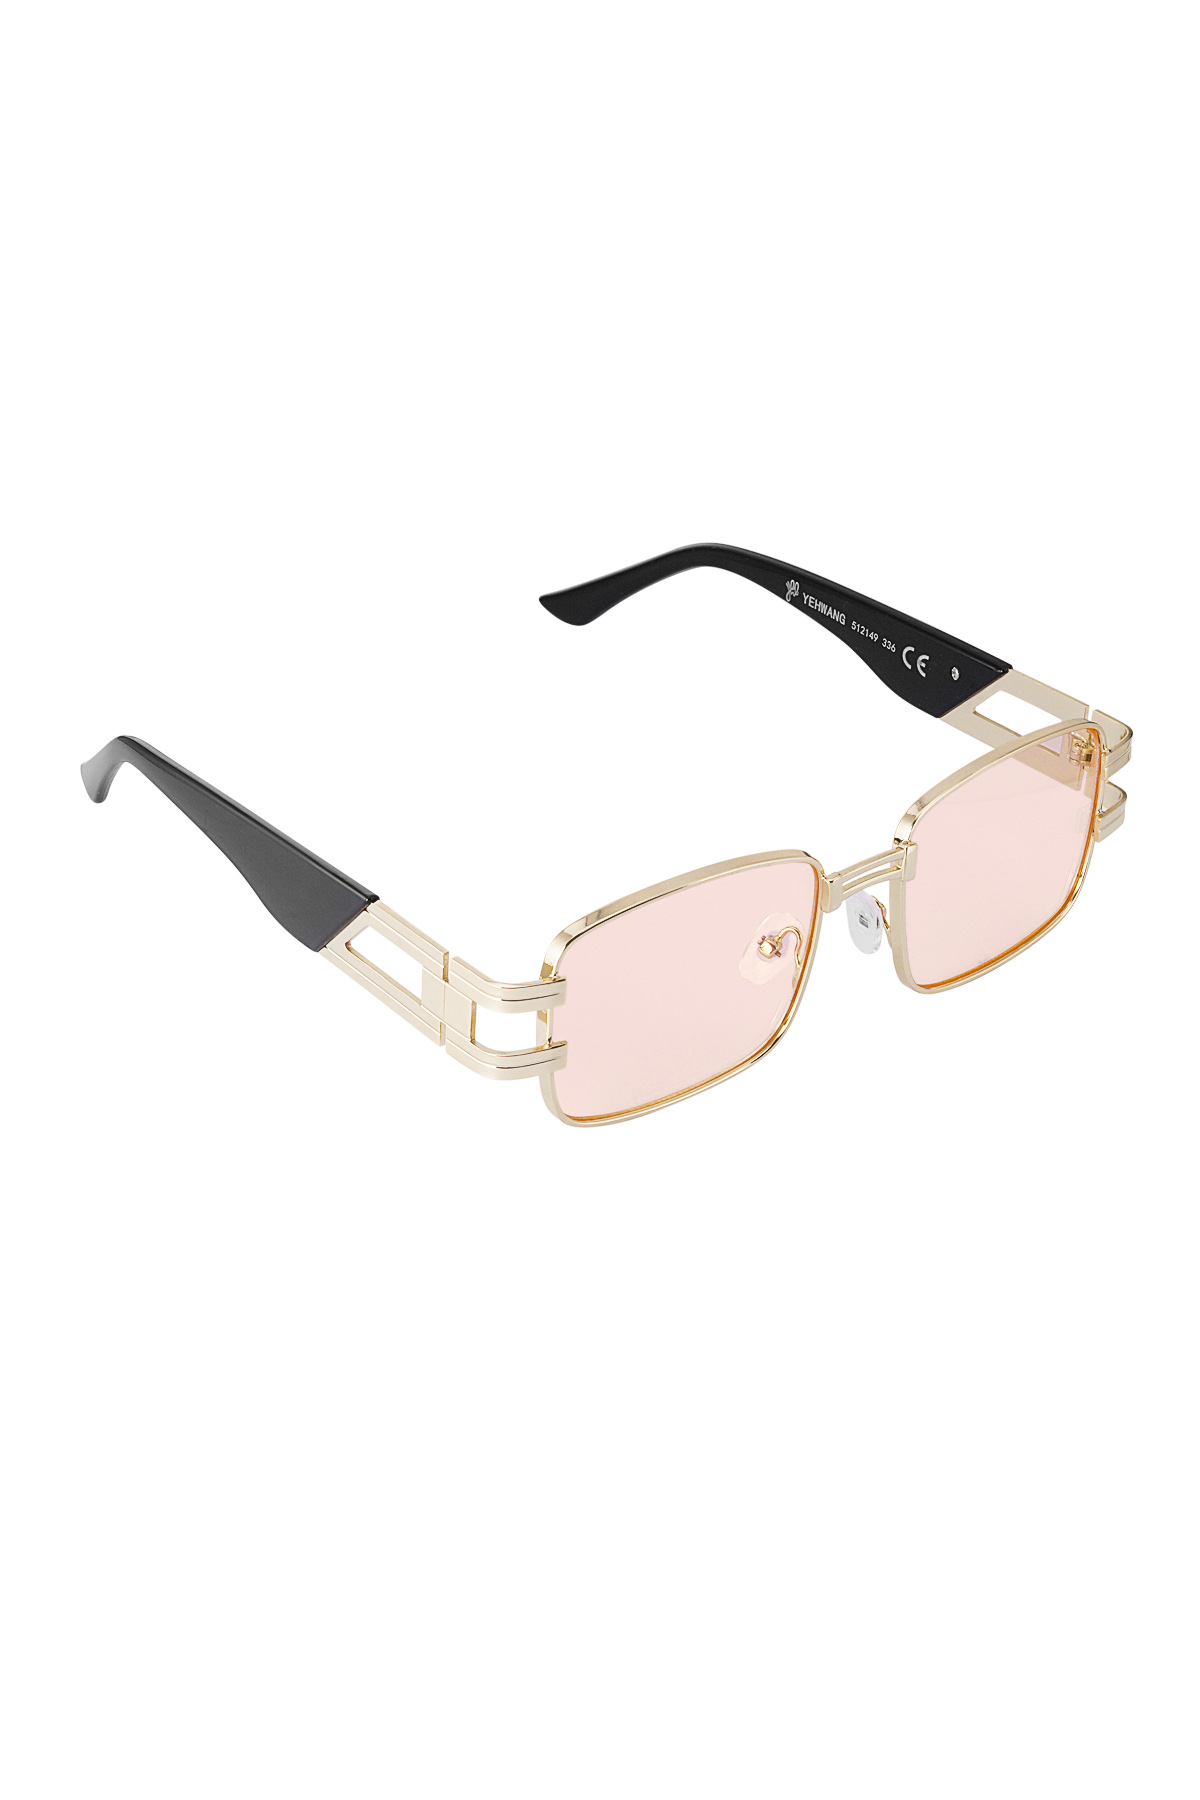 Gafas de sol simple metal esencial - oro rosa